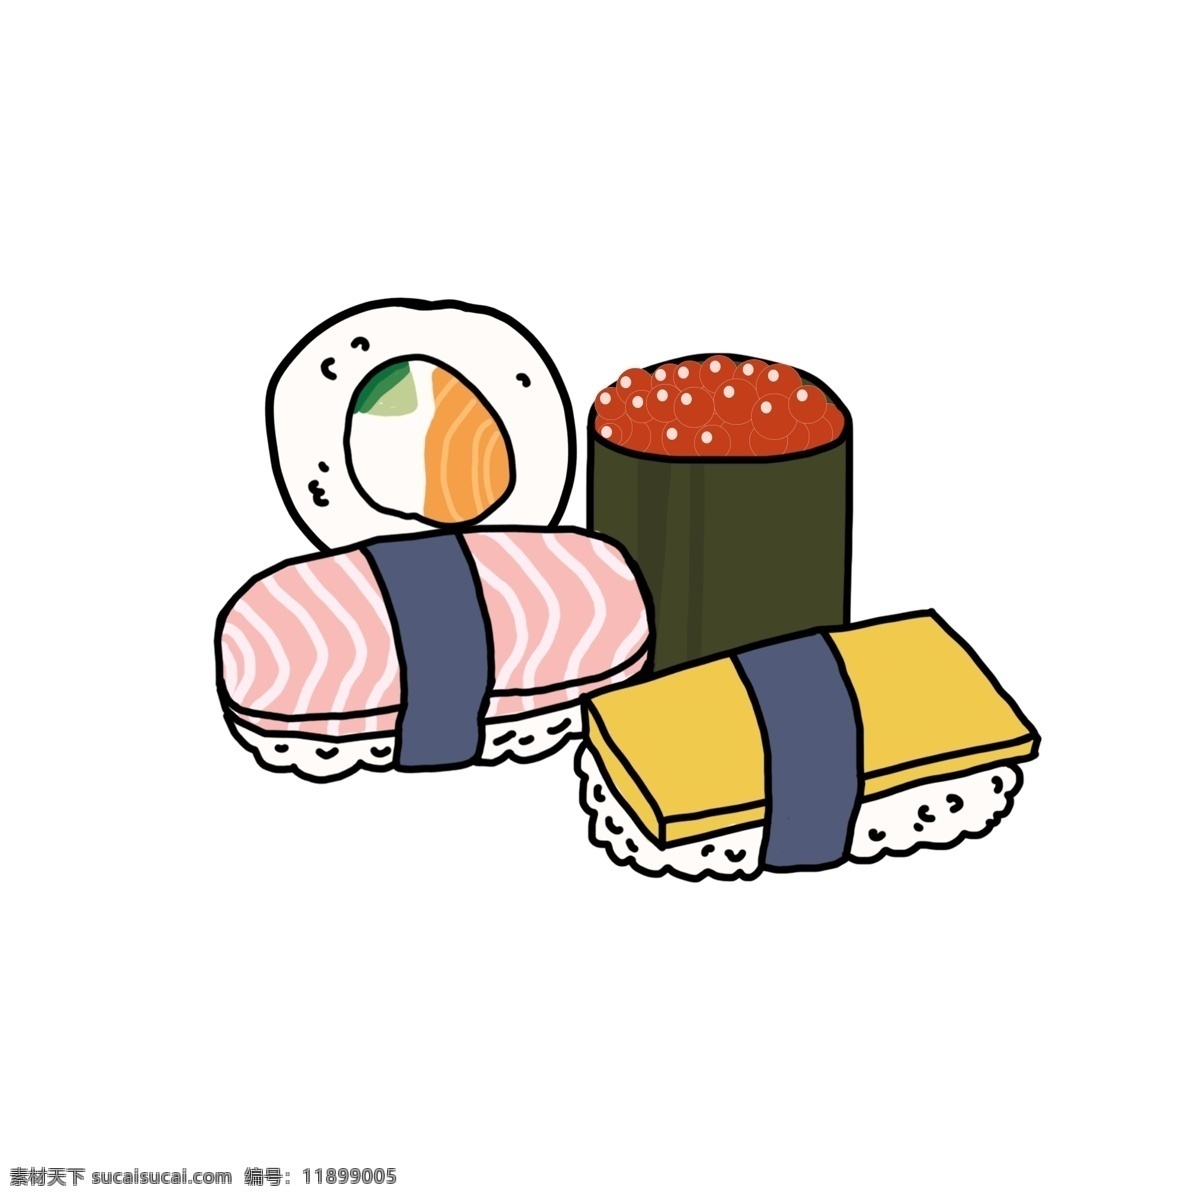 日本 寿司 卡通 插画 美味的寿司 日本寿司 卡通食物插画 精美的食物 零食 零食插画 美味寿司